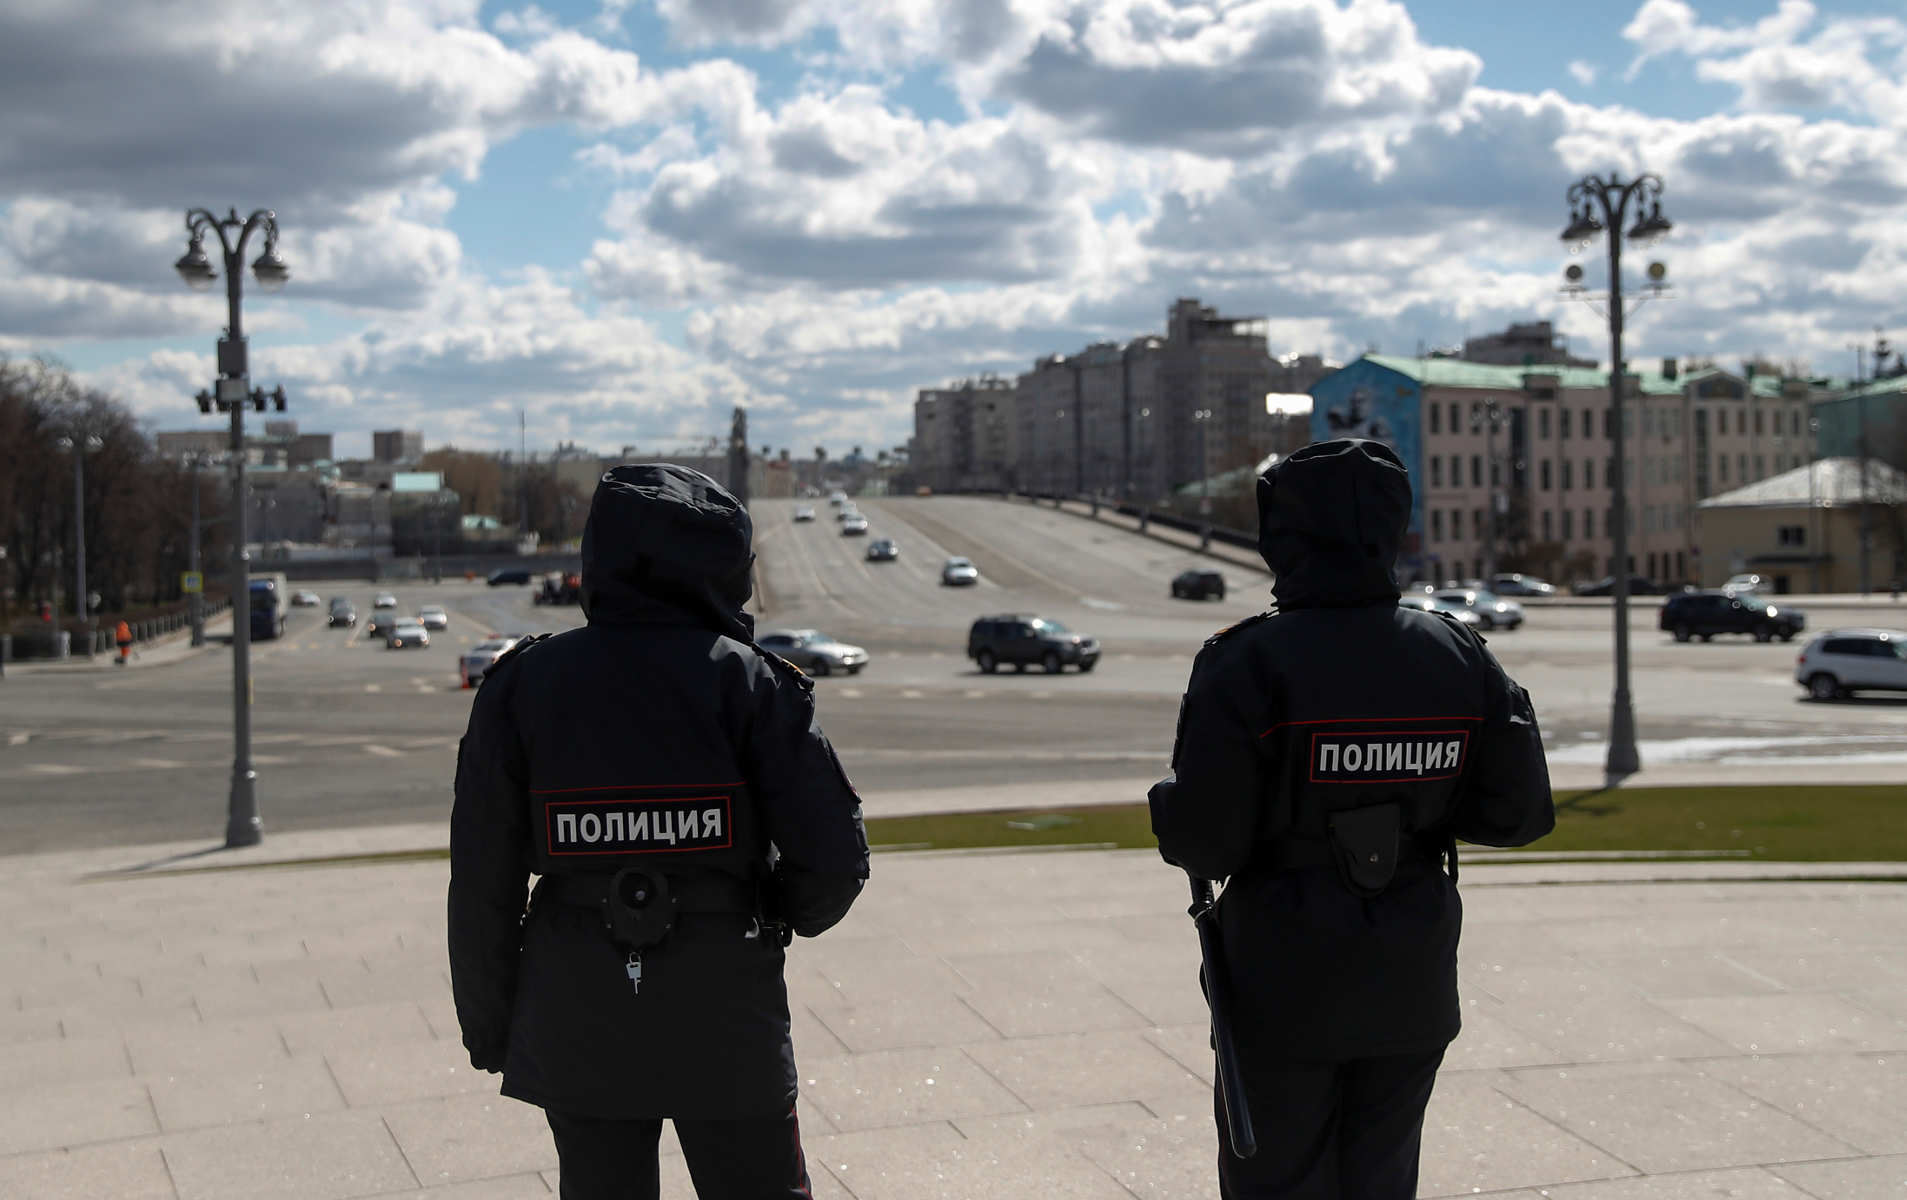 Ρωσία: Η FSB συνέλαβε στην Κριμαία δύο άτομα για κατασκοπεία υπέρ της Ουκρανίας